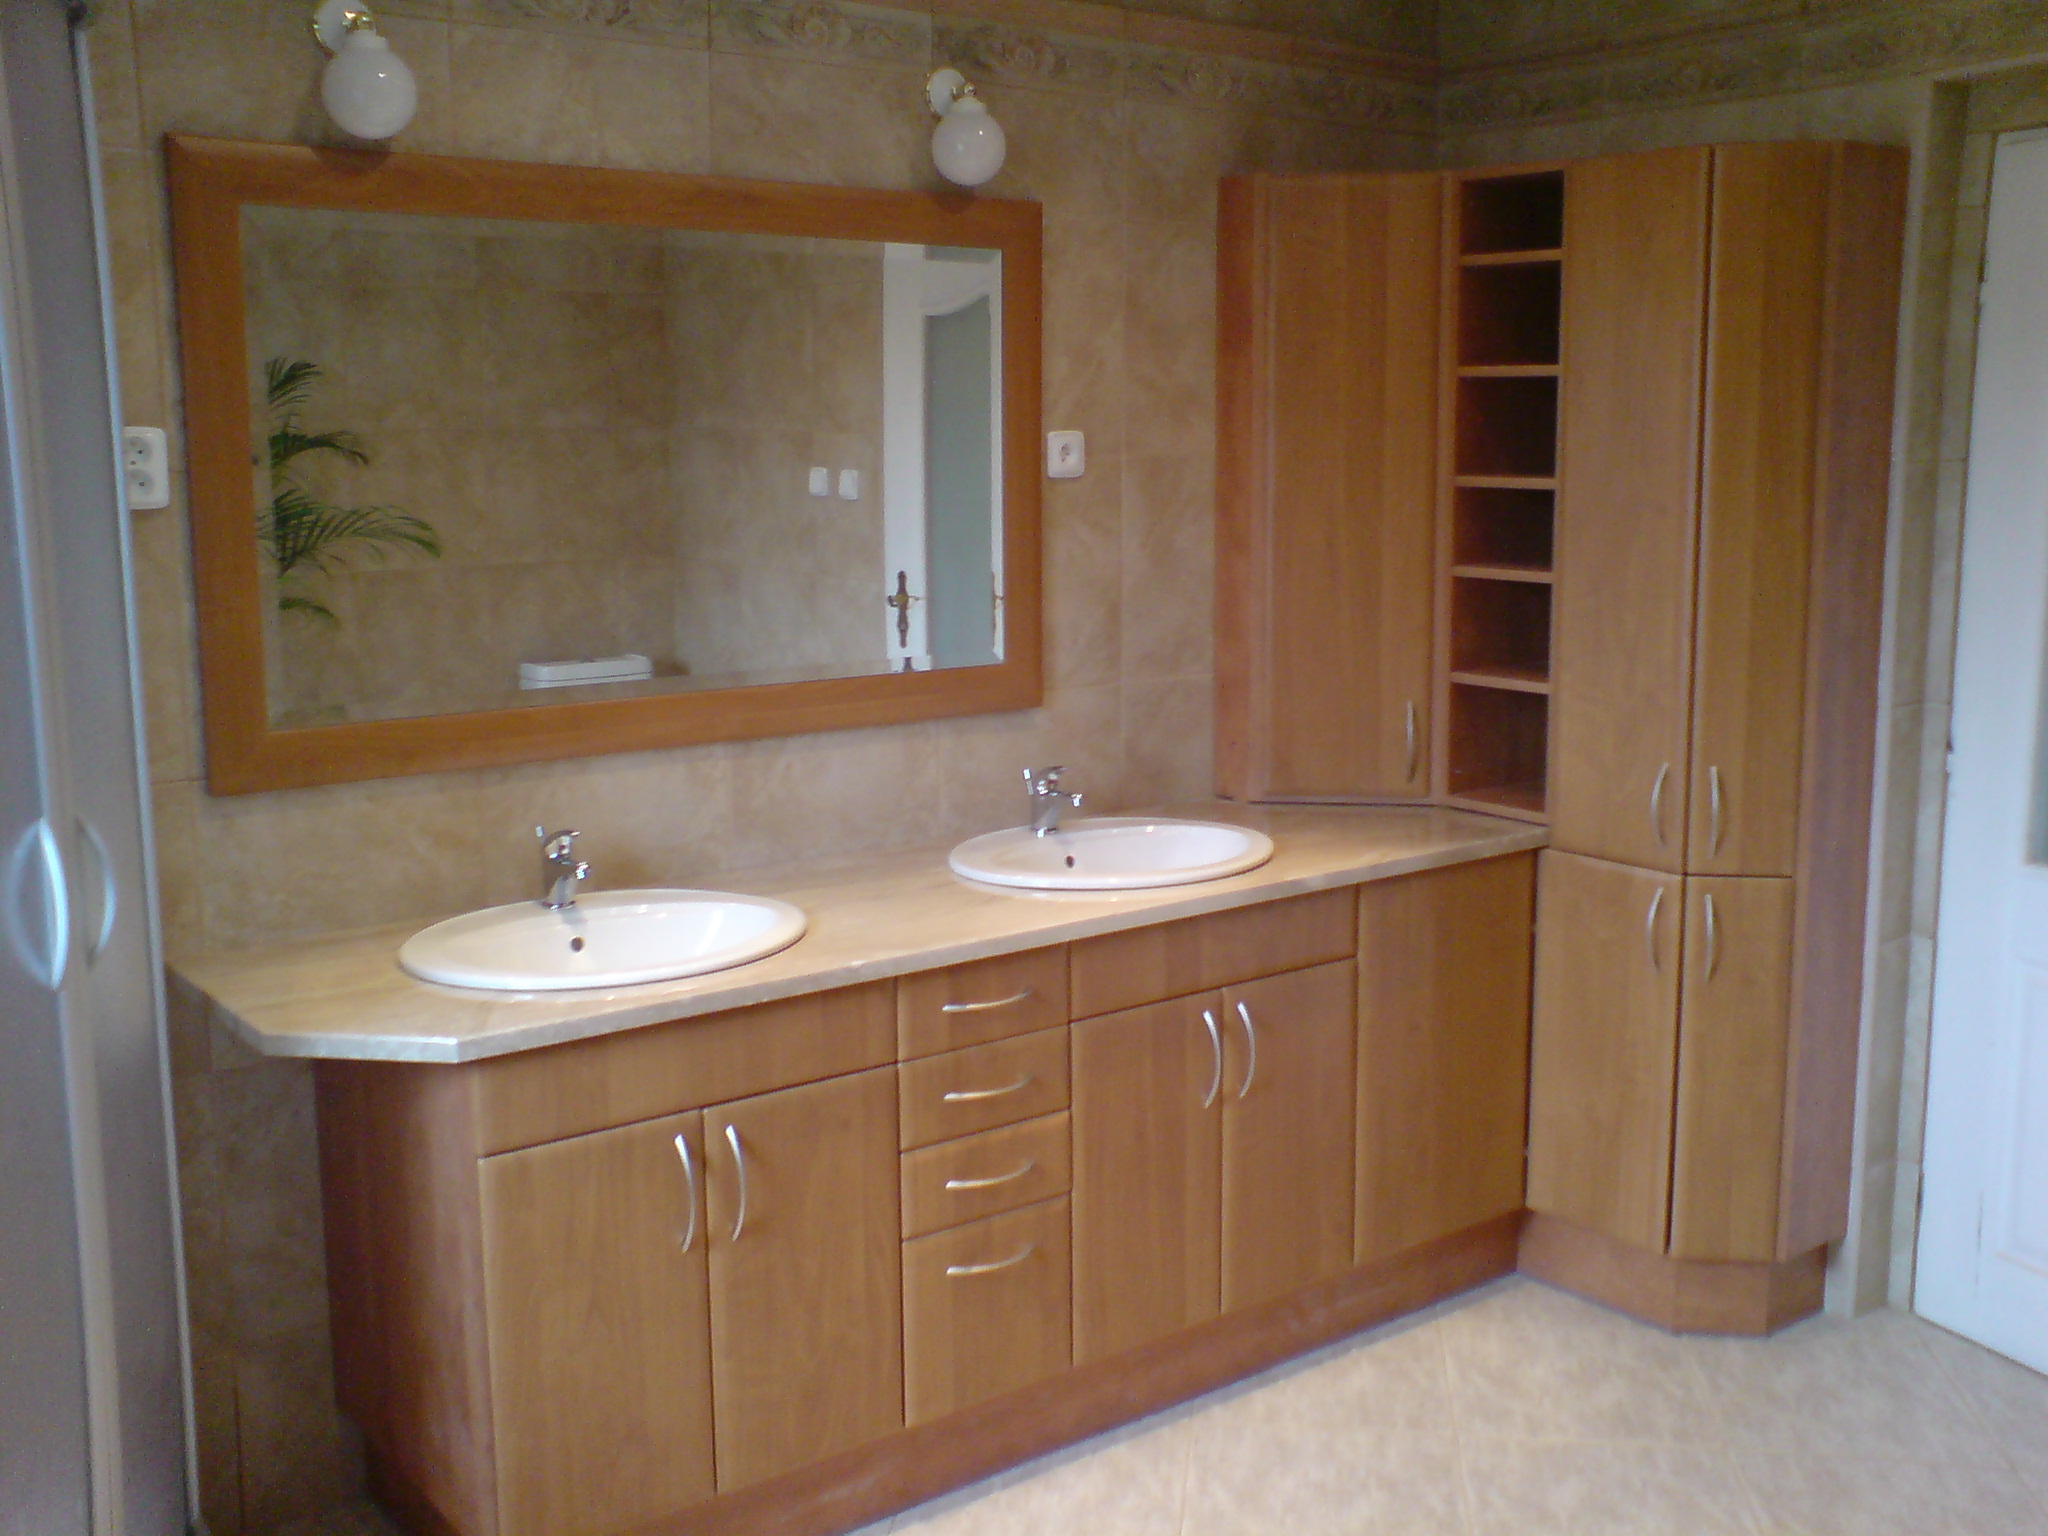 Dodání a montáž koupelnového nábytku, kvalitních koupelnových doplňků.